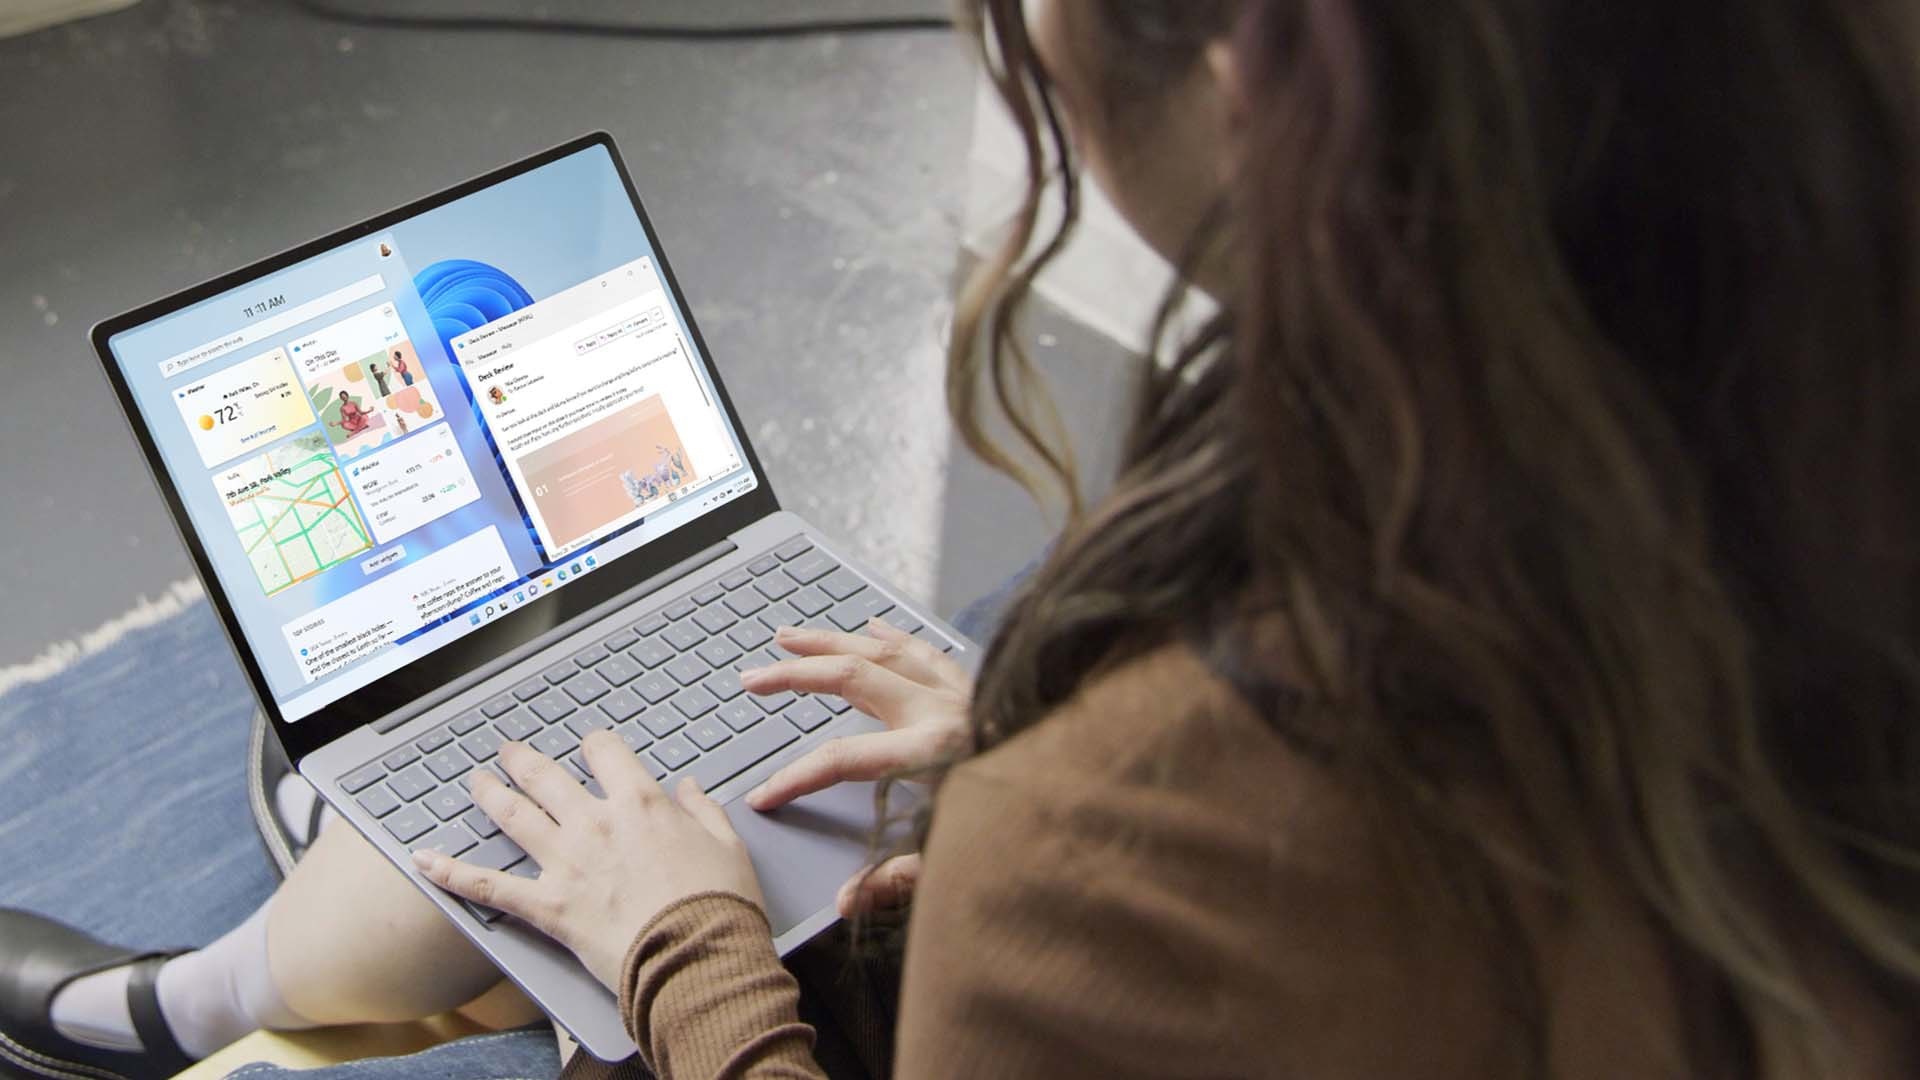 Co piąta osoba chce wyrzucić swój laptop przez okno – nowy sondaż